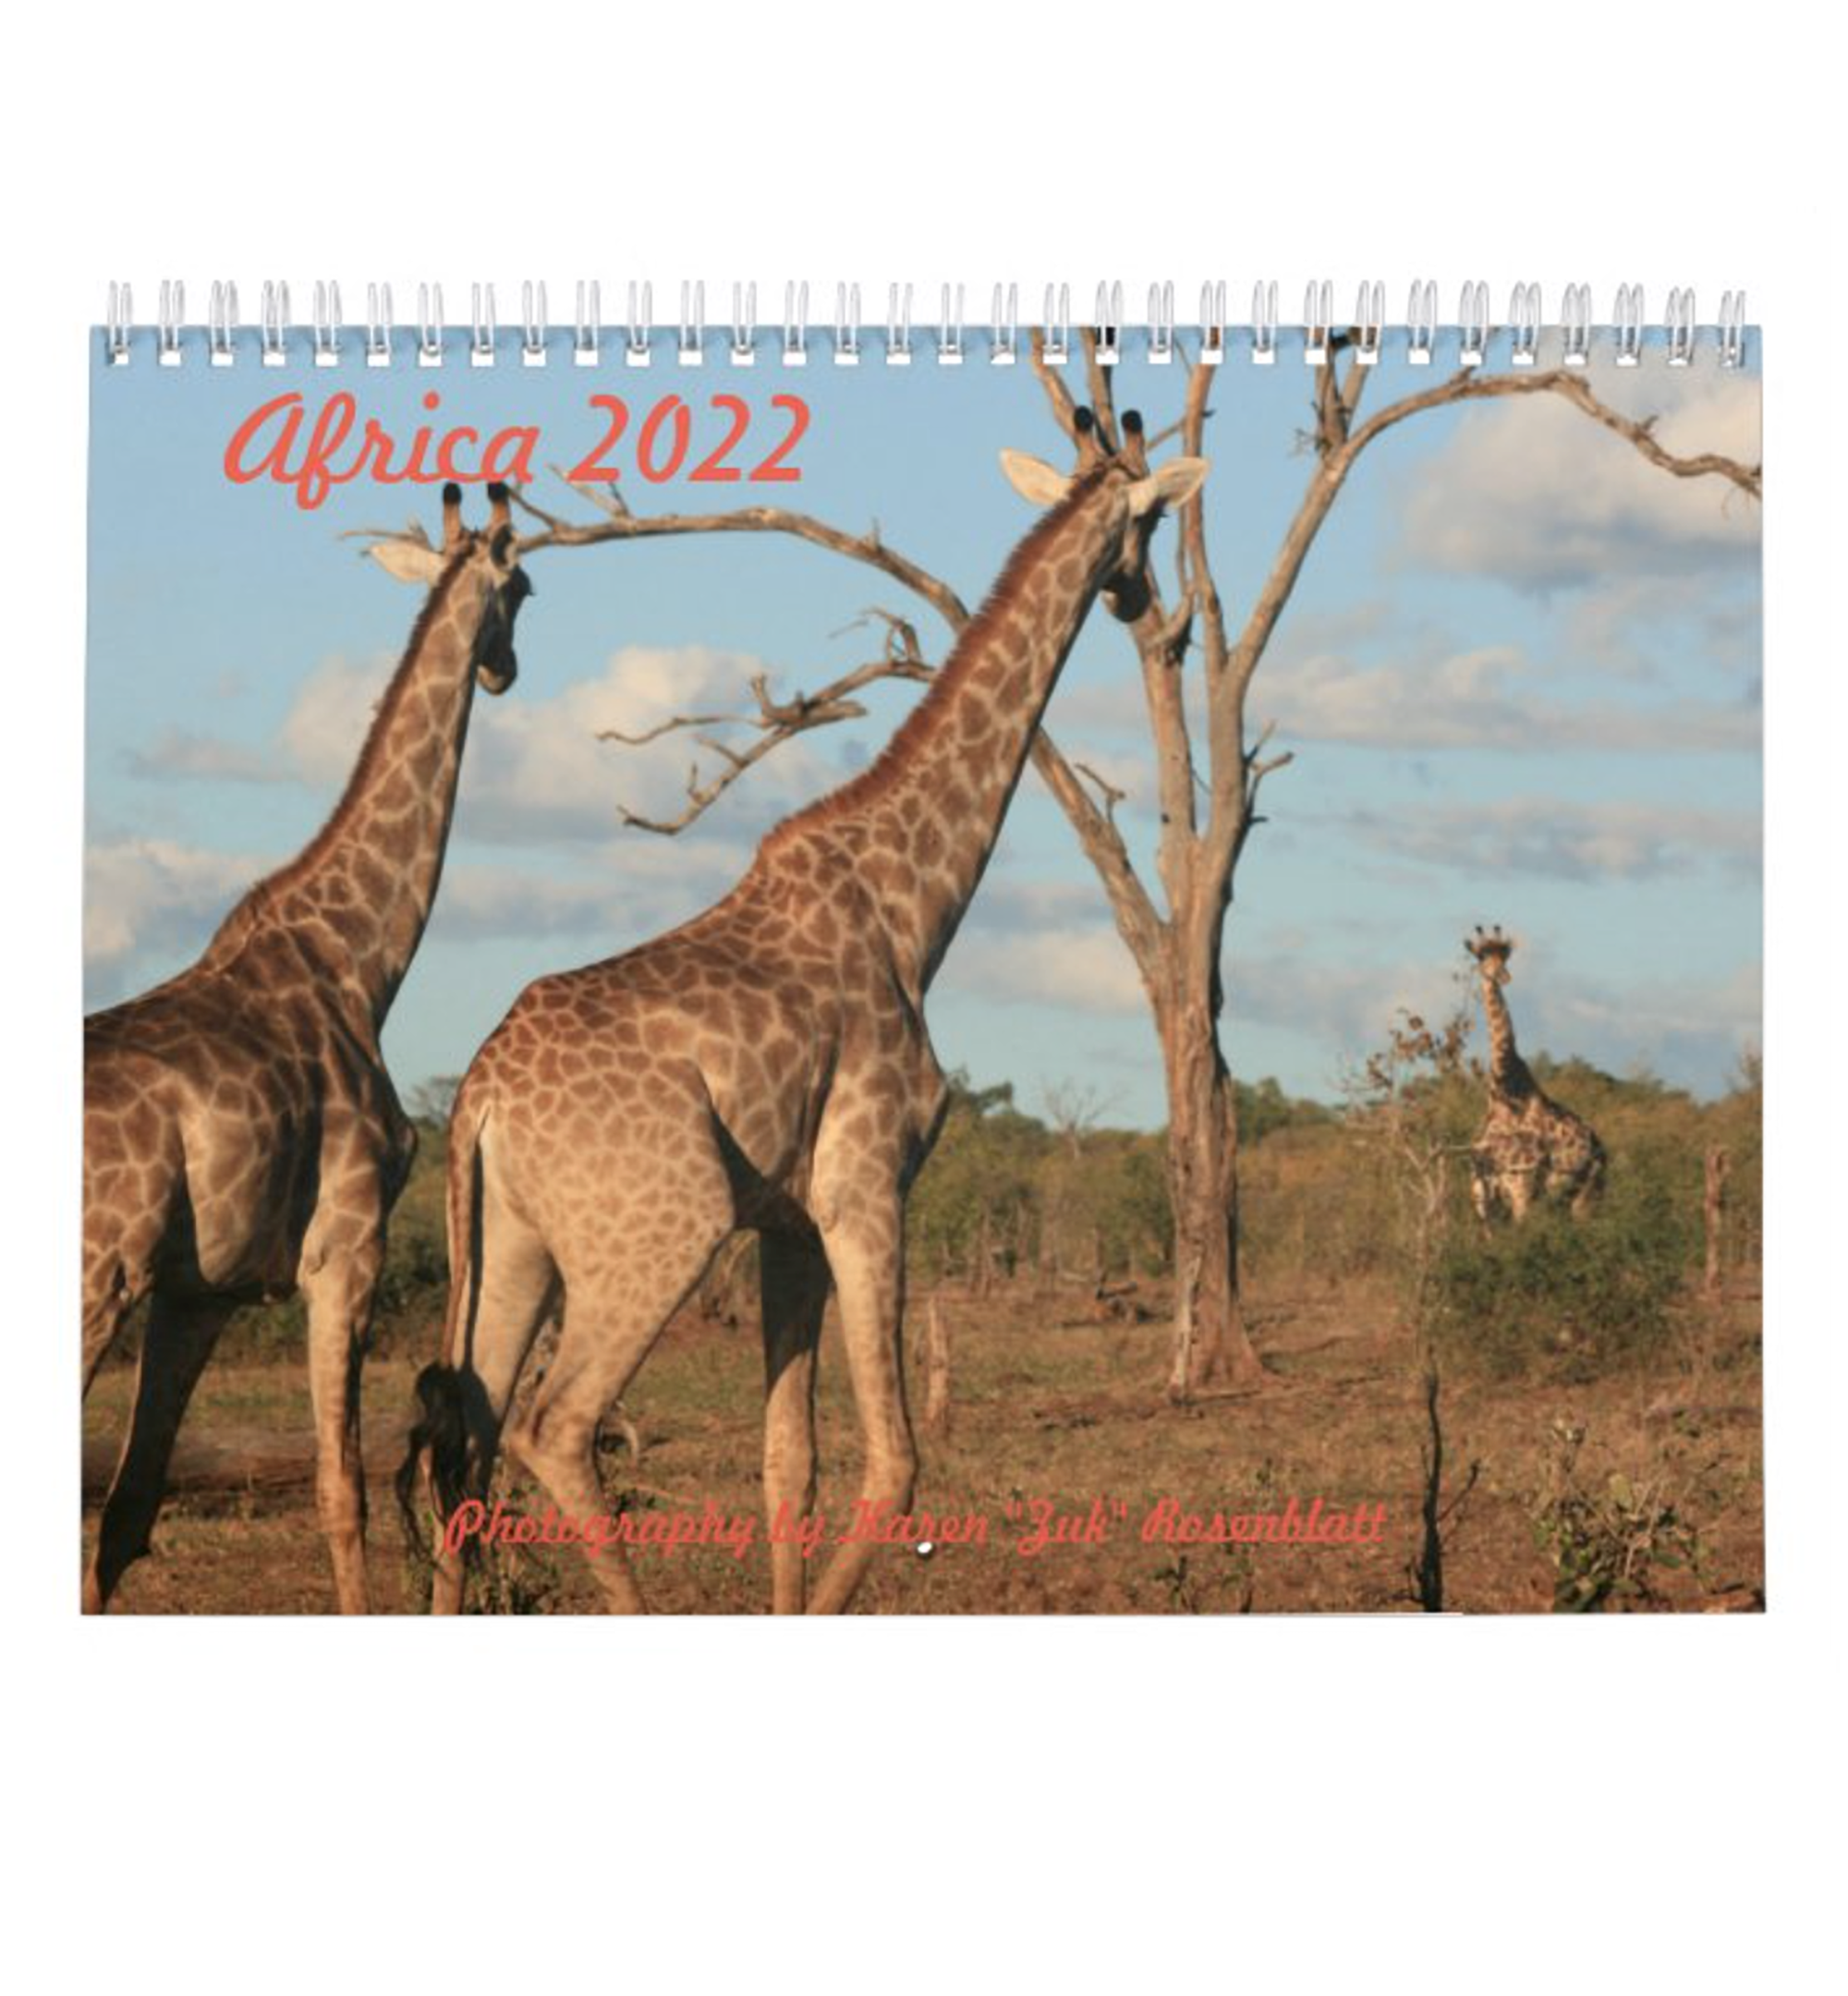 Africa 2022 Wall Calendar. Photography by Karen Zuk Rosenblatt.